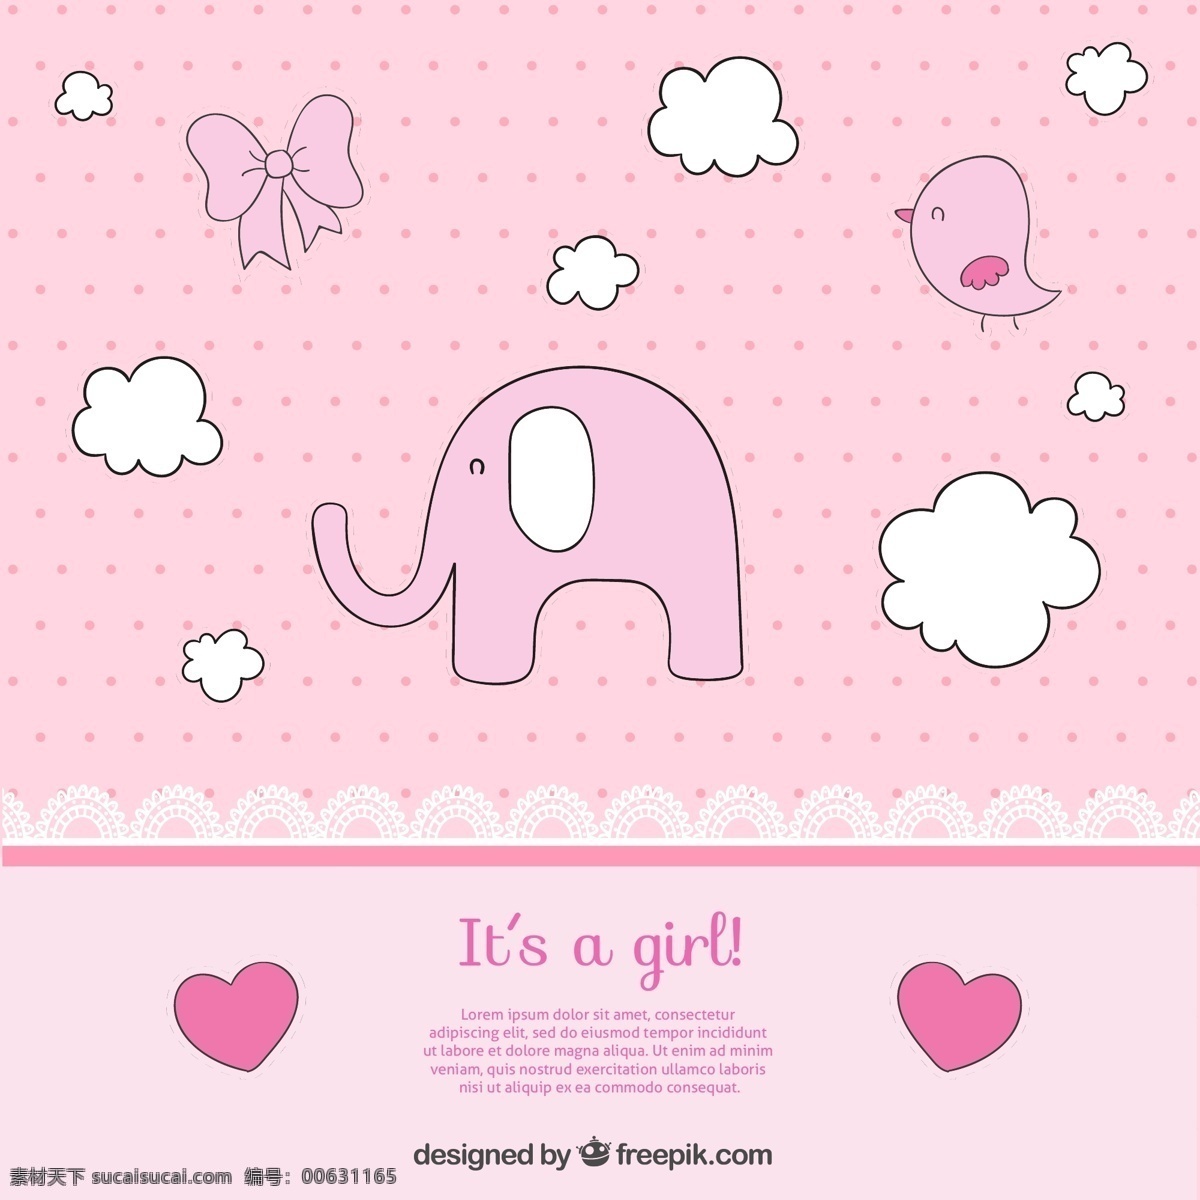 粉色 大象 迎 婴 派对 贺卡 矢量 迎婴 可爱 蝴蝶结 爱心 白色